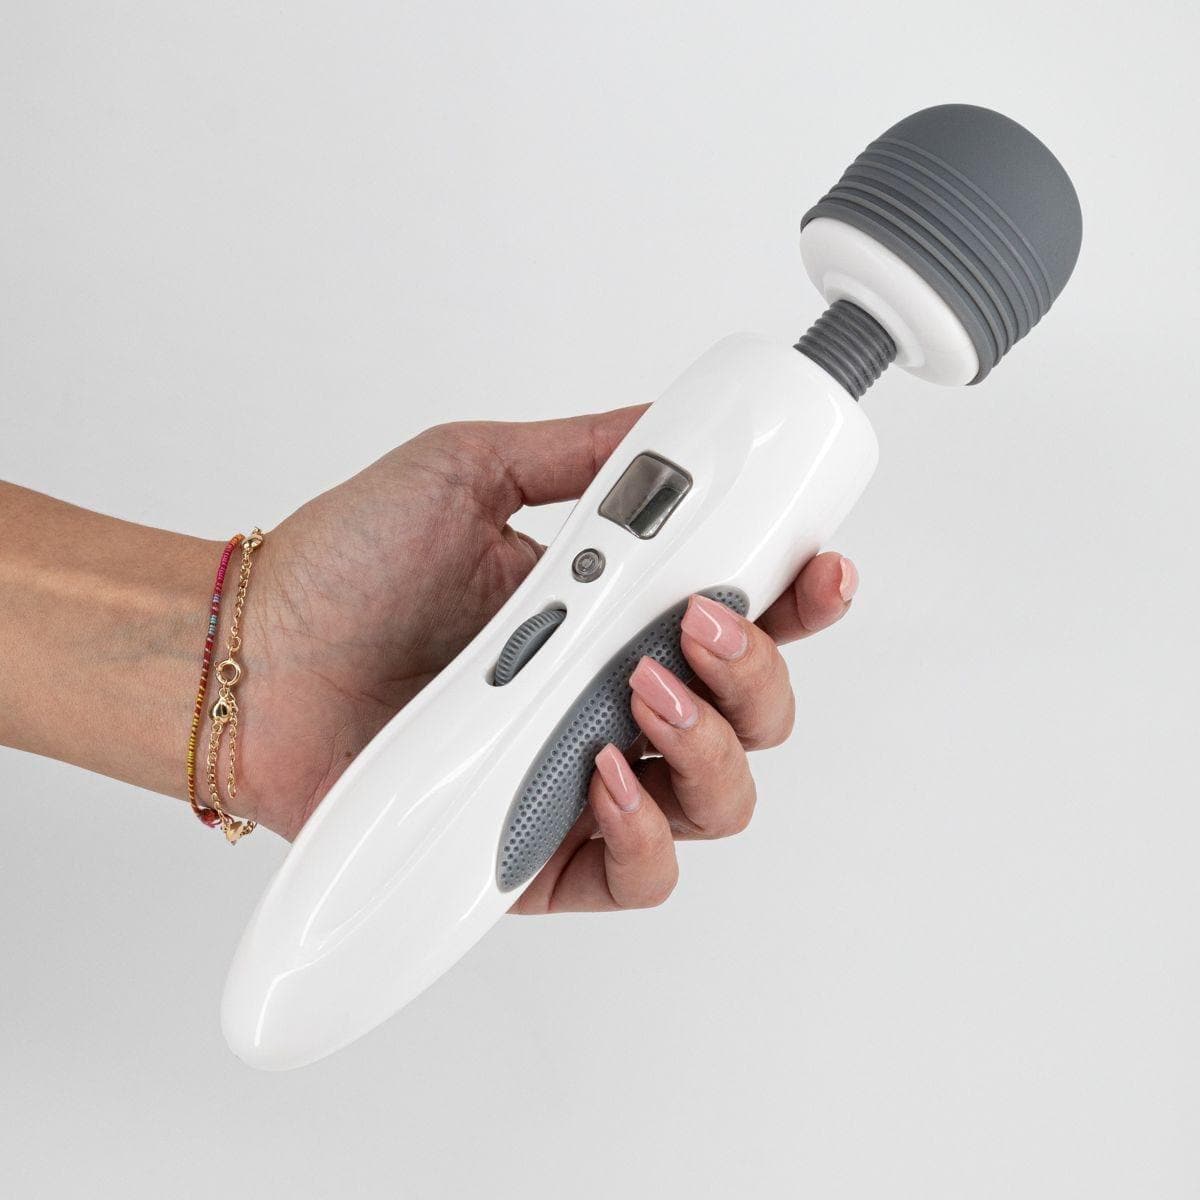 Massajador Harlequin USB, 27.3cm Ø5.1cm, 9vibrações, função aquecimento - Pérola SexShop